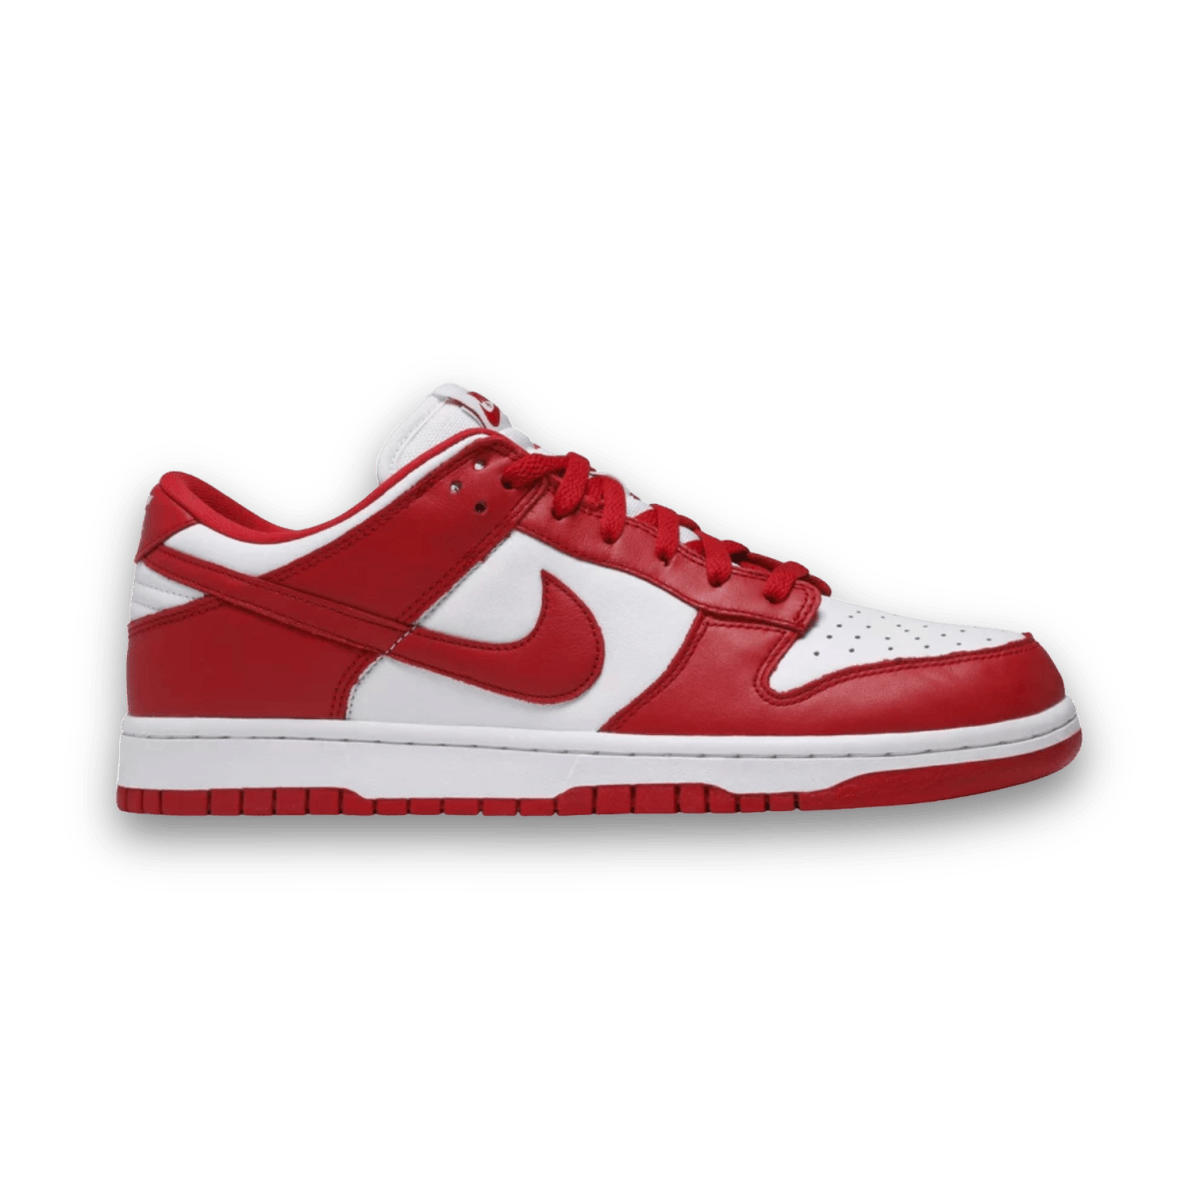 Dunk Low Retro SP 'St Johns' Red - Low Sneaker - Jawns on Fire Sneakers & Streetwear